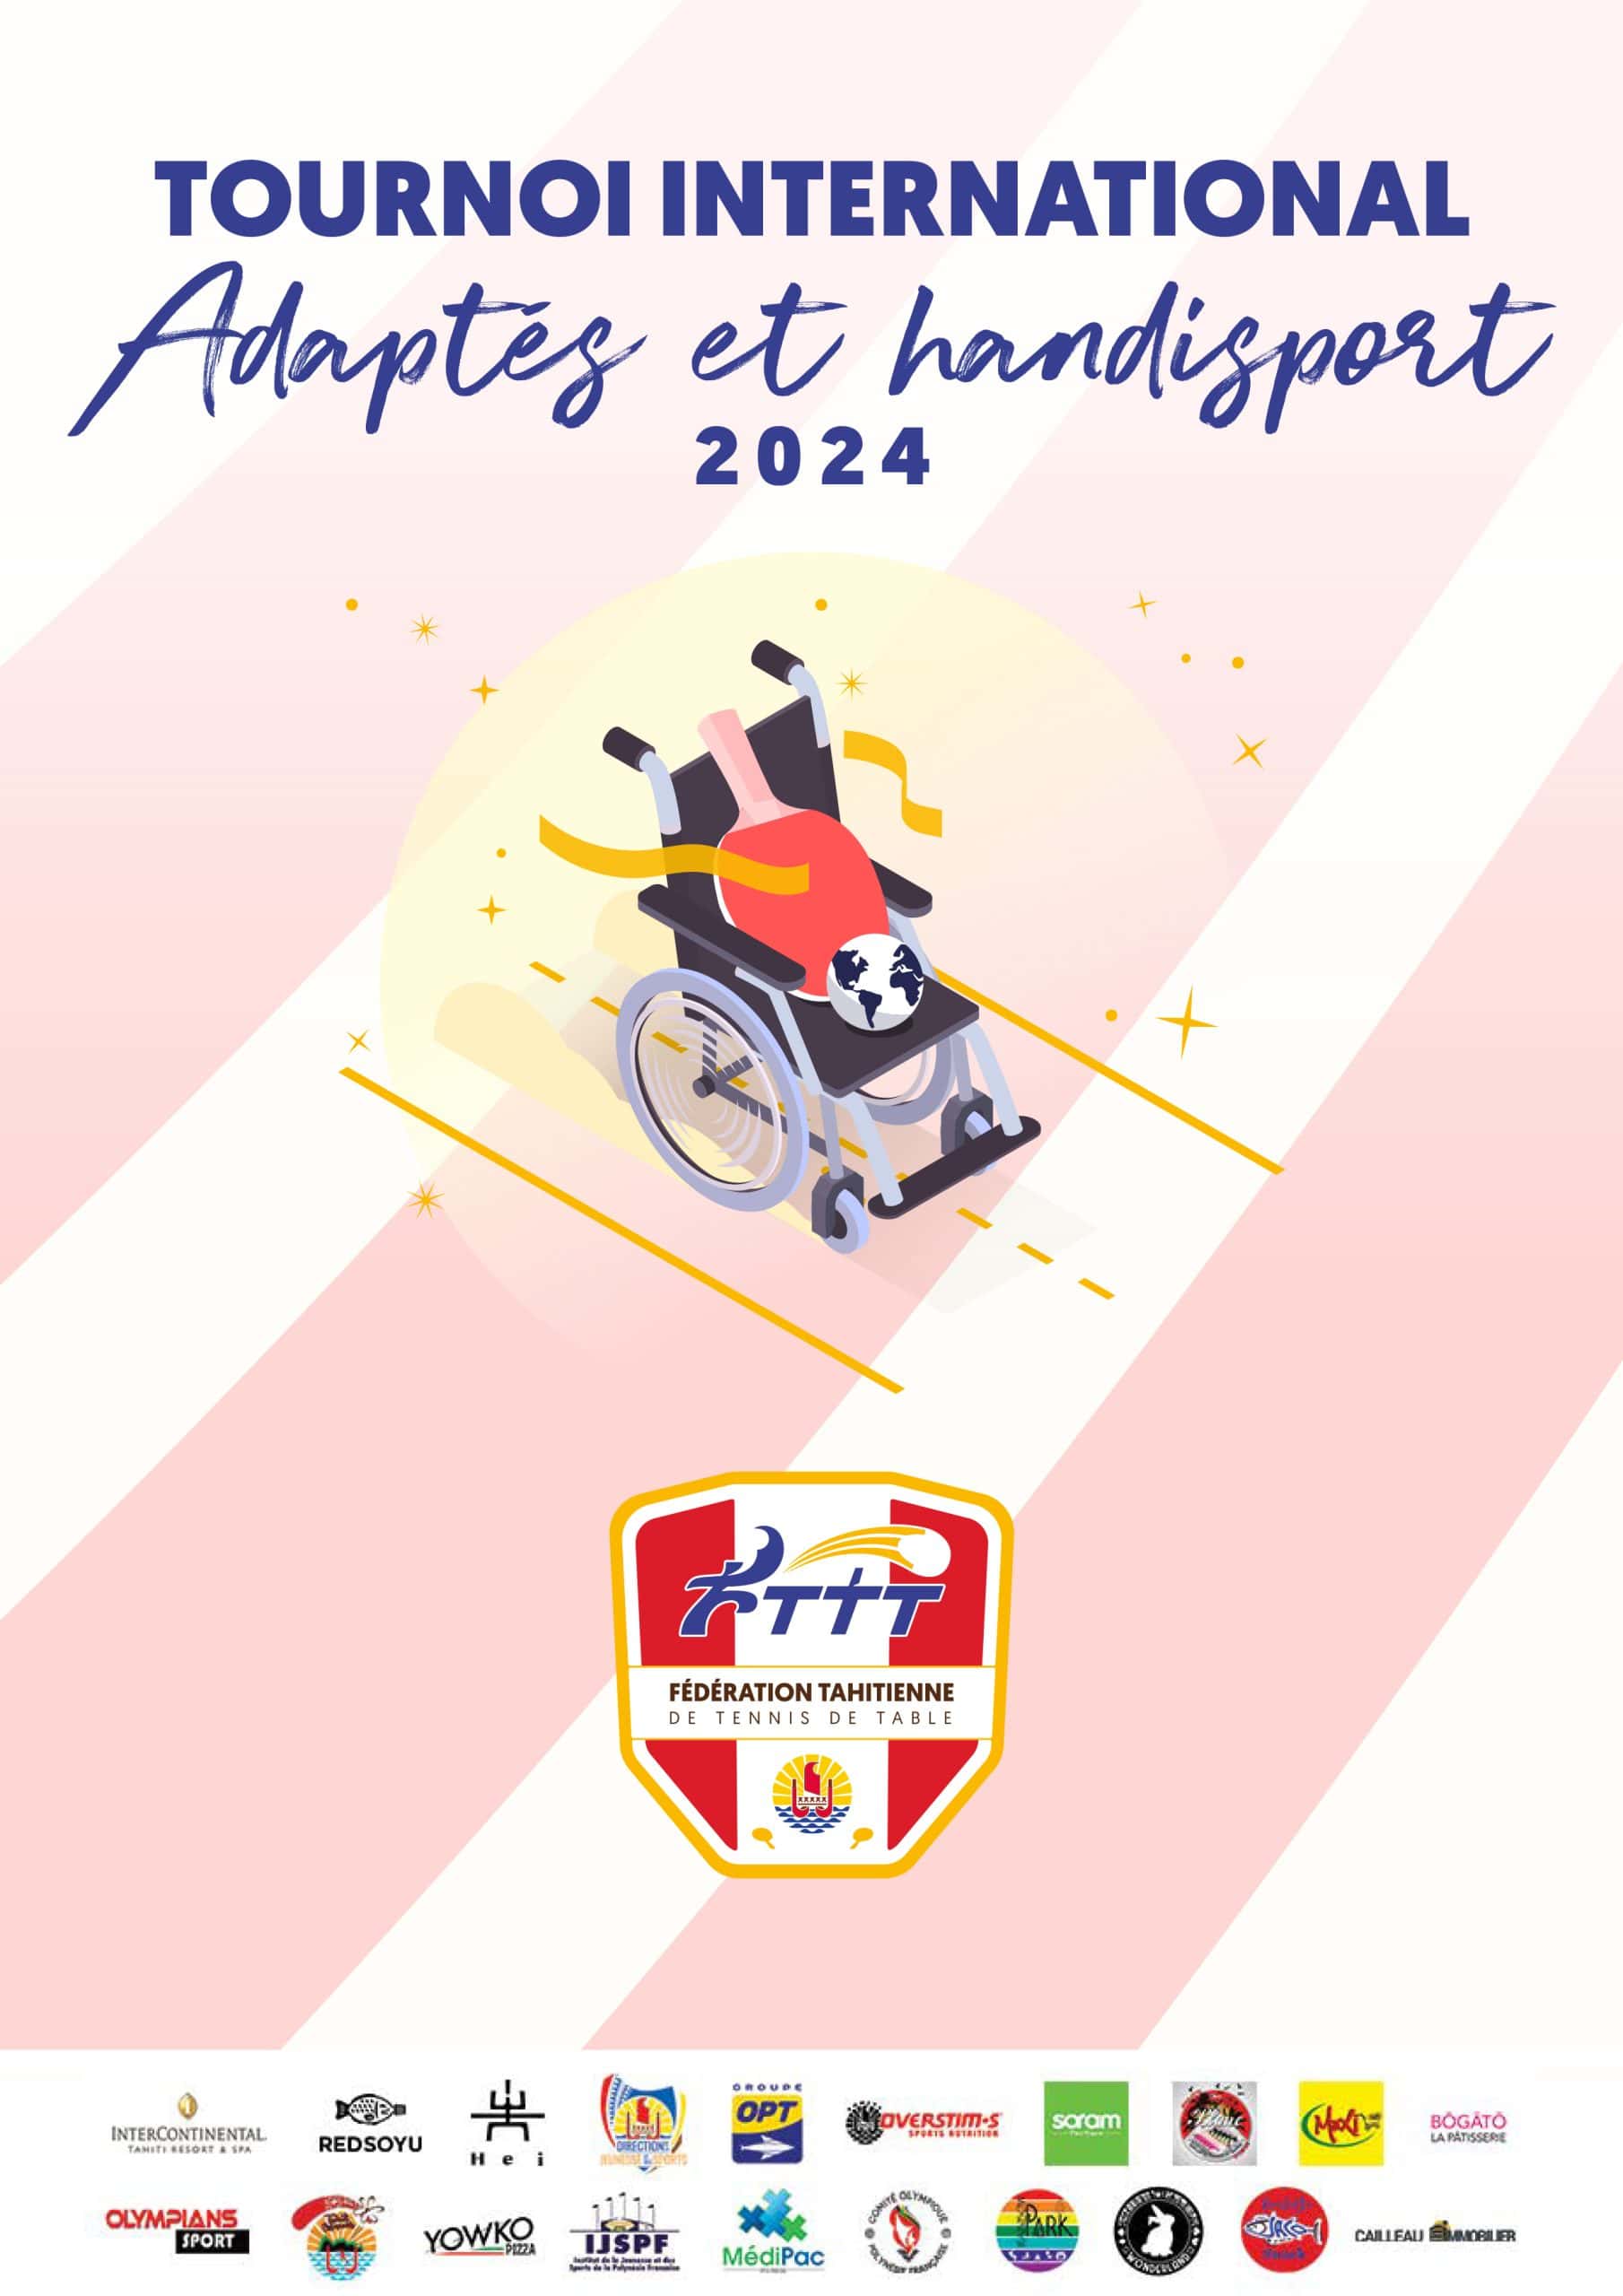 TOURNOI INTERNATIONAL DE POLYNESIE HANDISPORT 2024